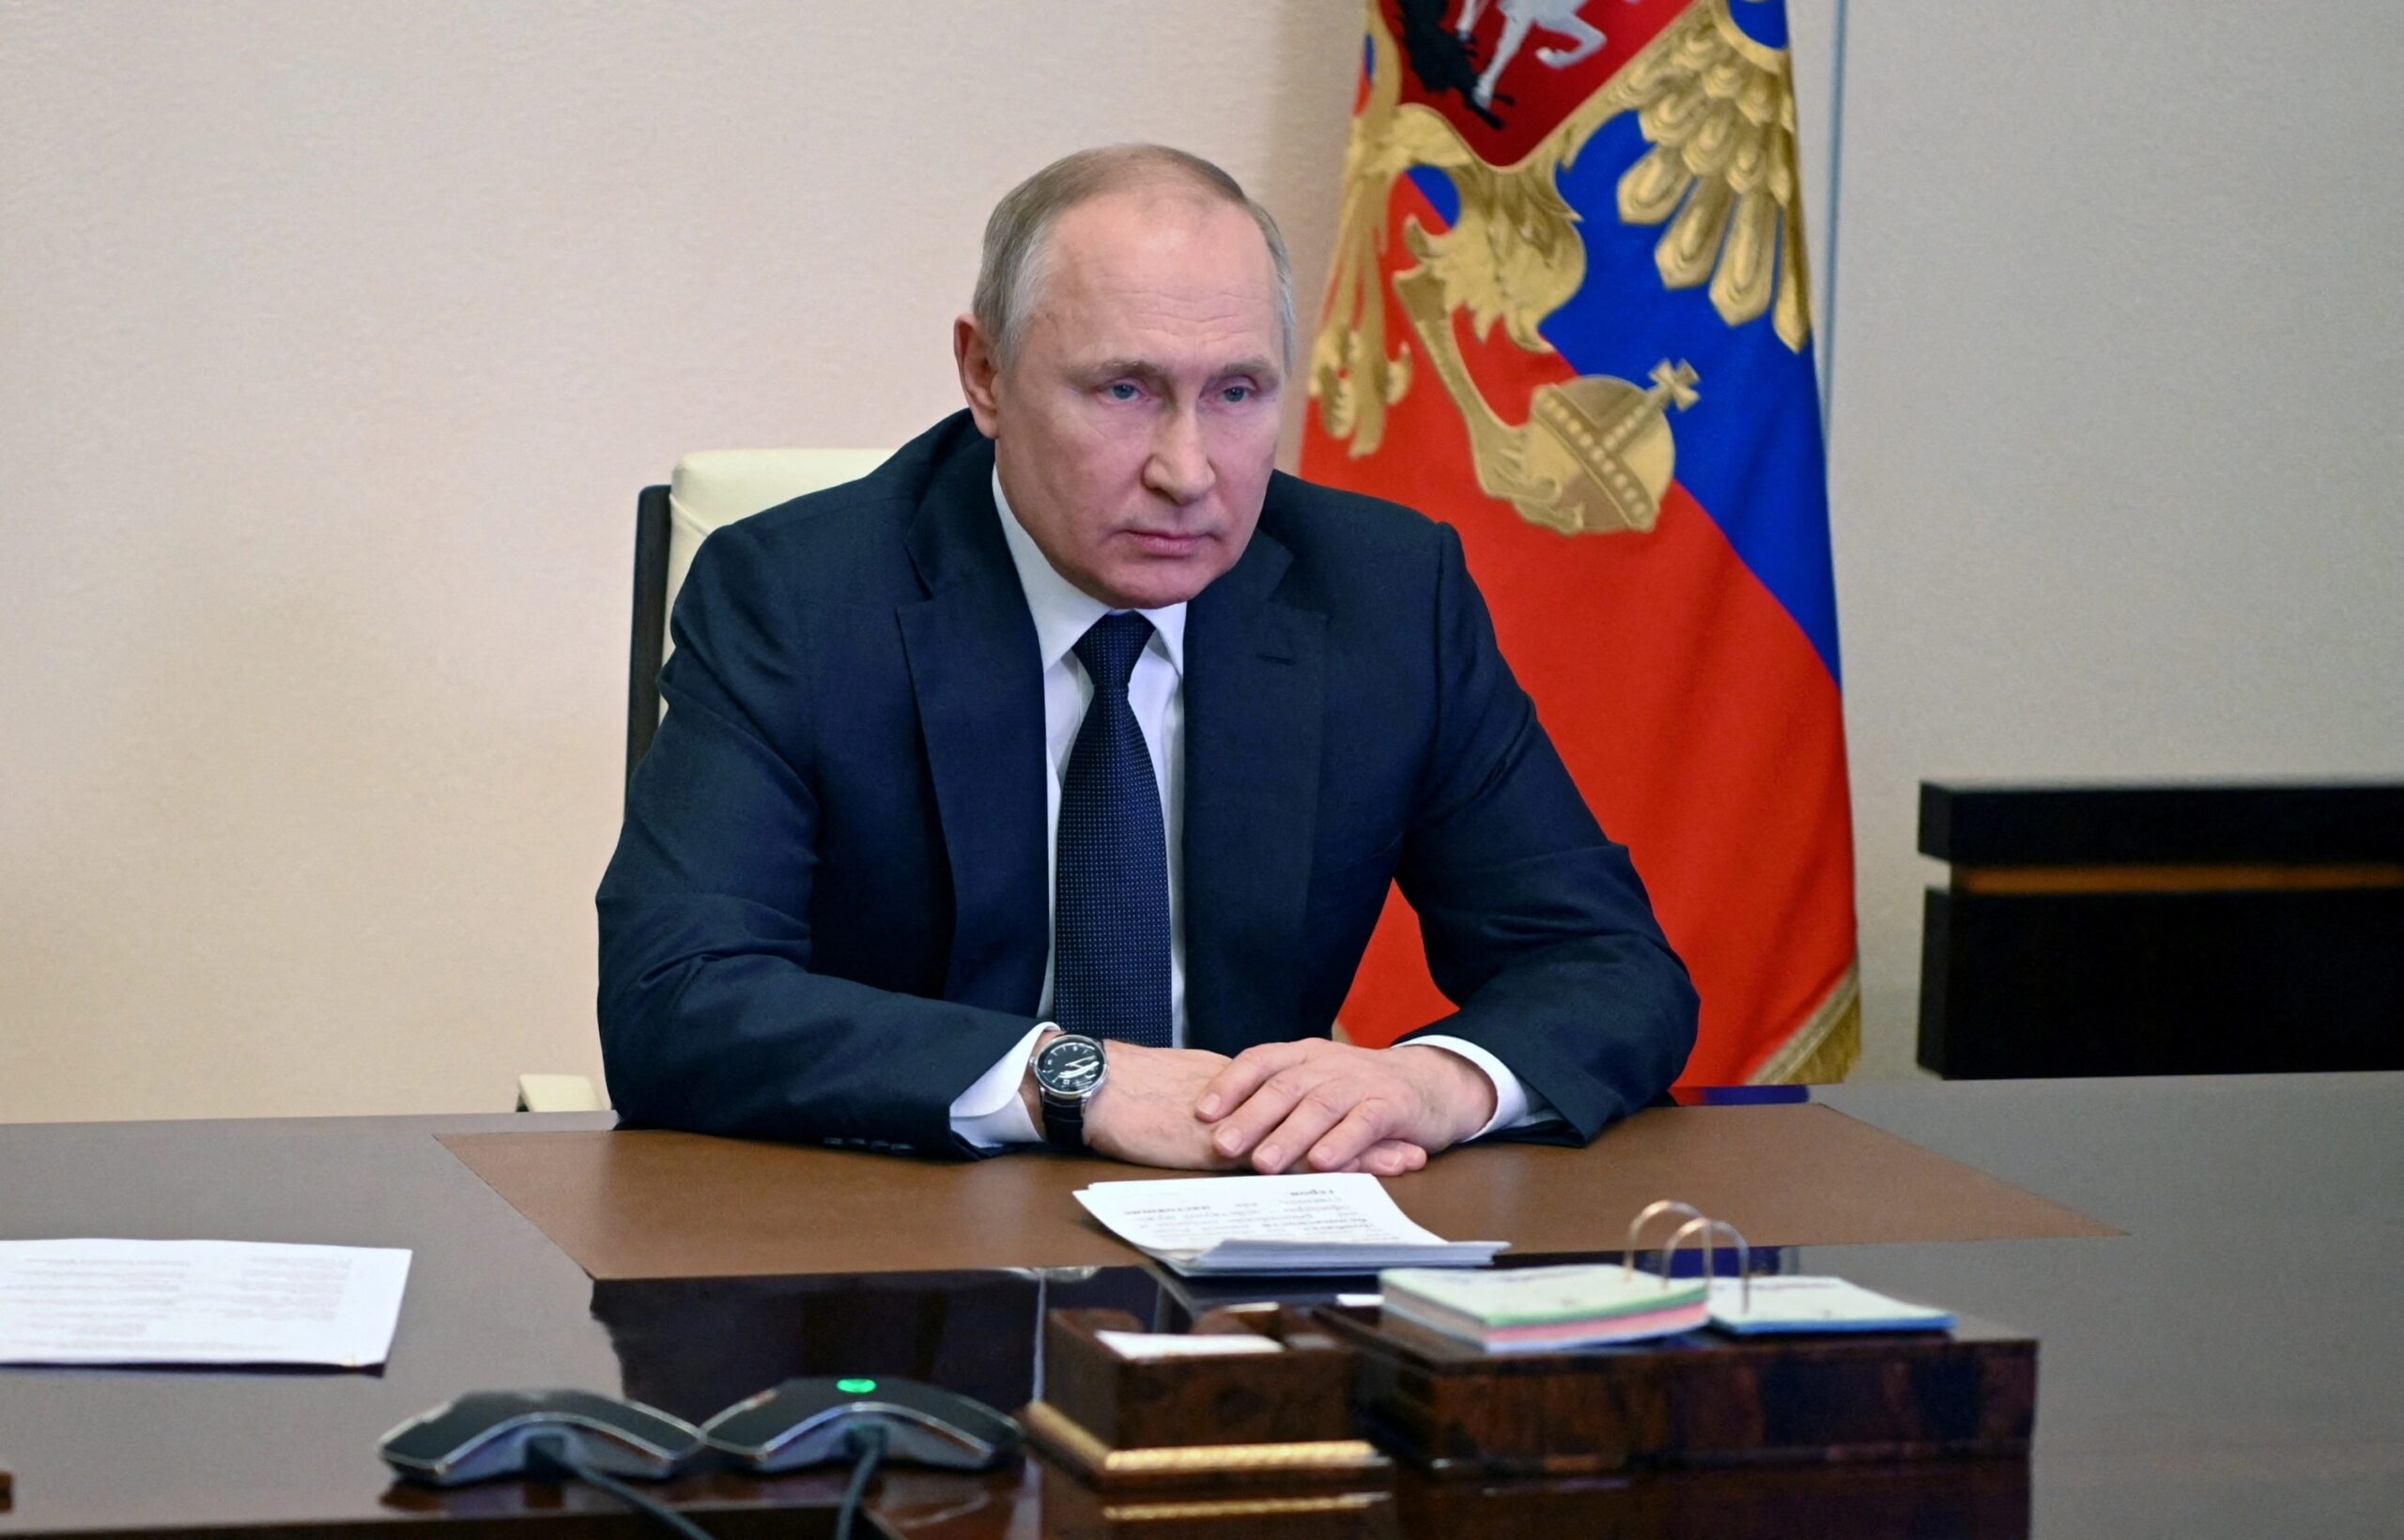 Putin kararnameyi imzaladı: Ukrayna’dan gelen sığınmacılara yardım edilecek